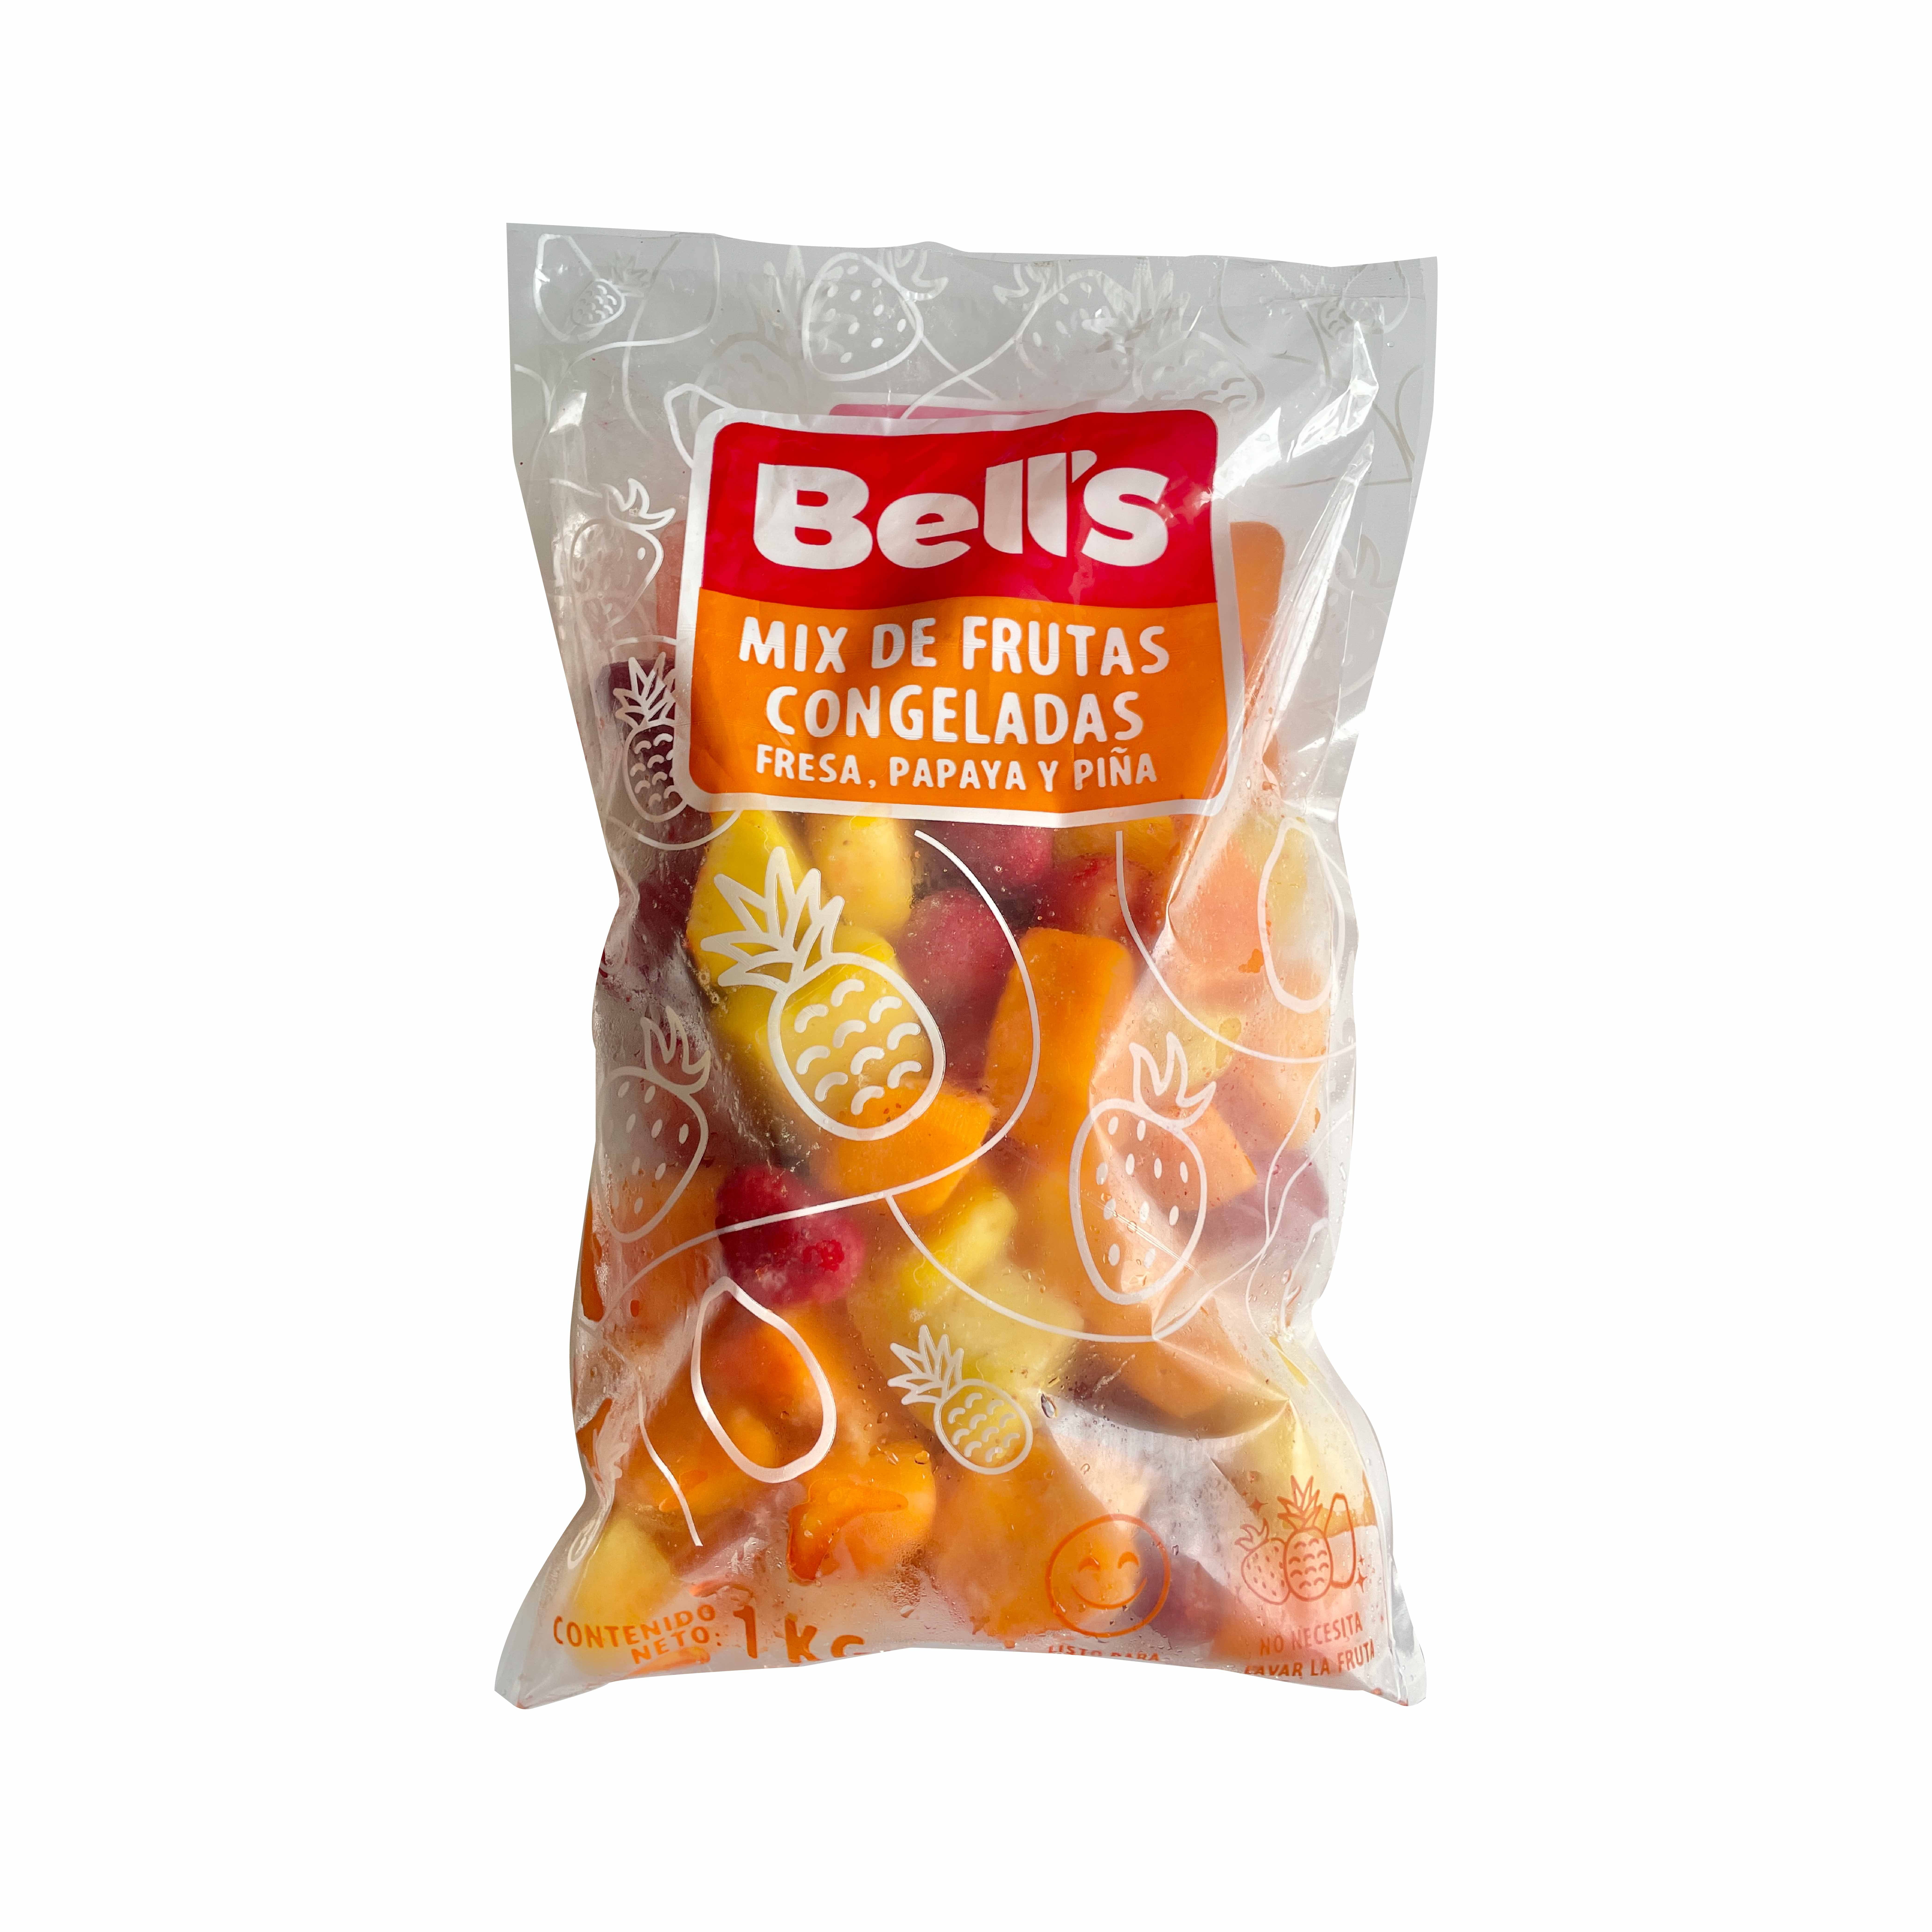 Mix de Frutas Congeladas BELL'S Bolsa 1kg